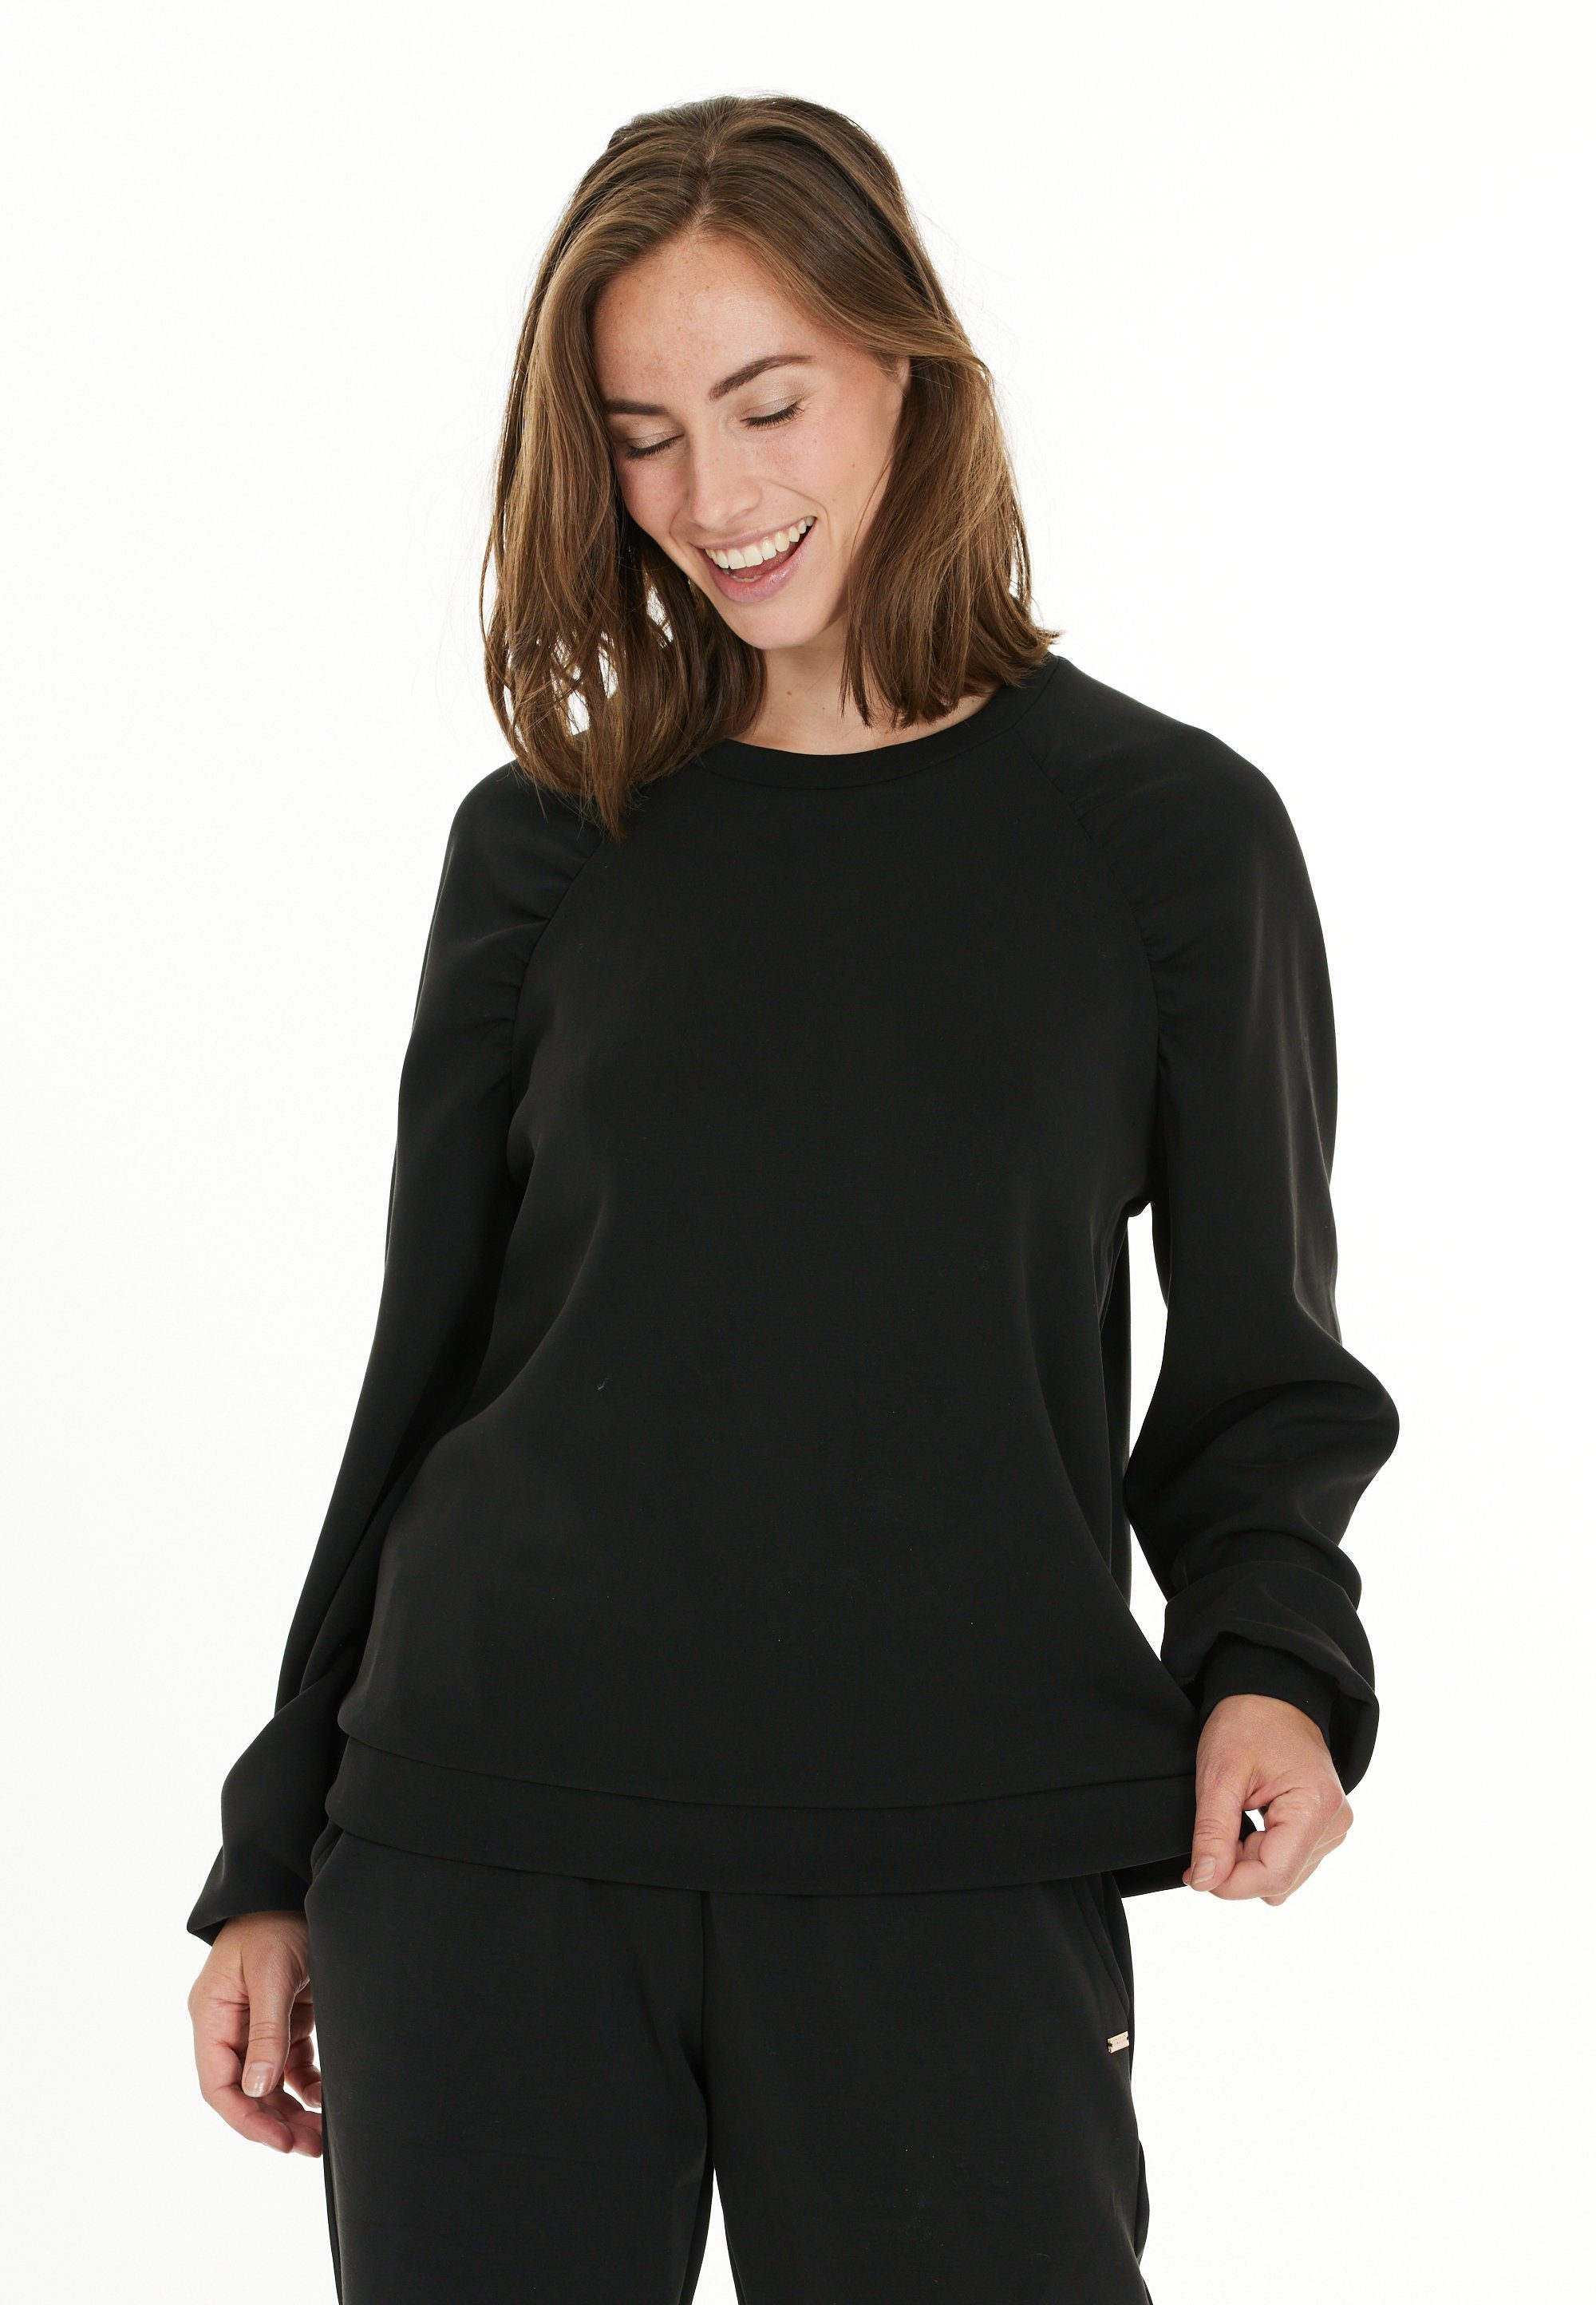 ATHLECIA Sweatshirt Jillnana in schwarz schlichtem Design